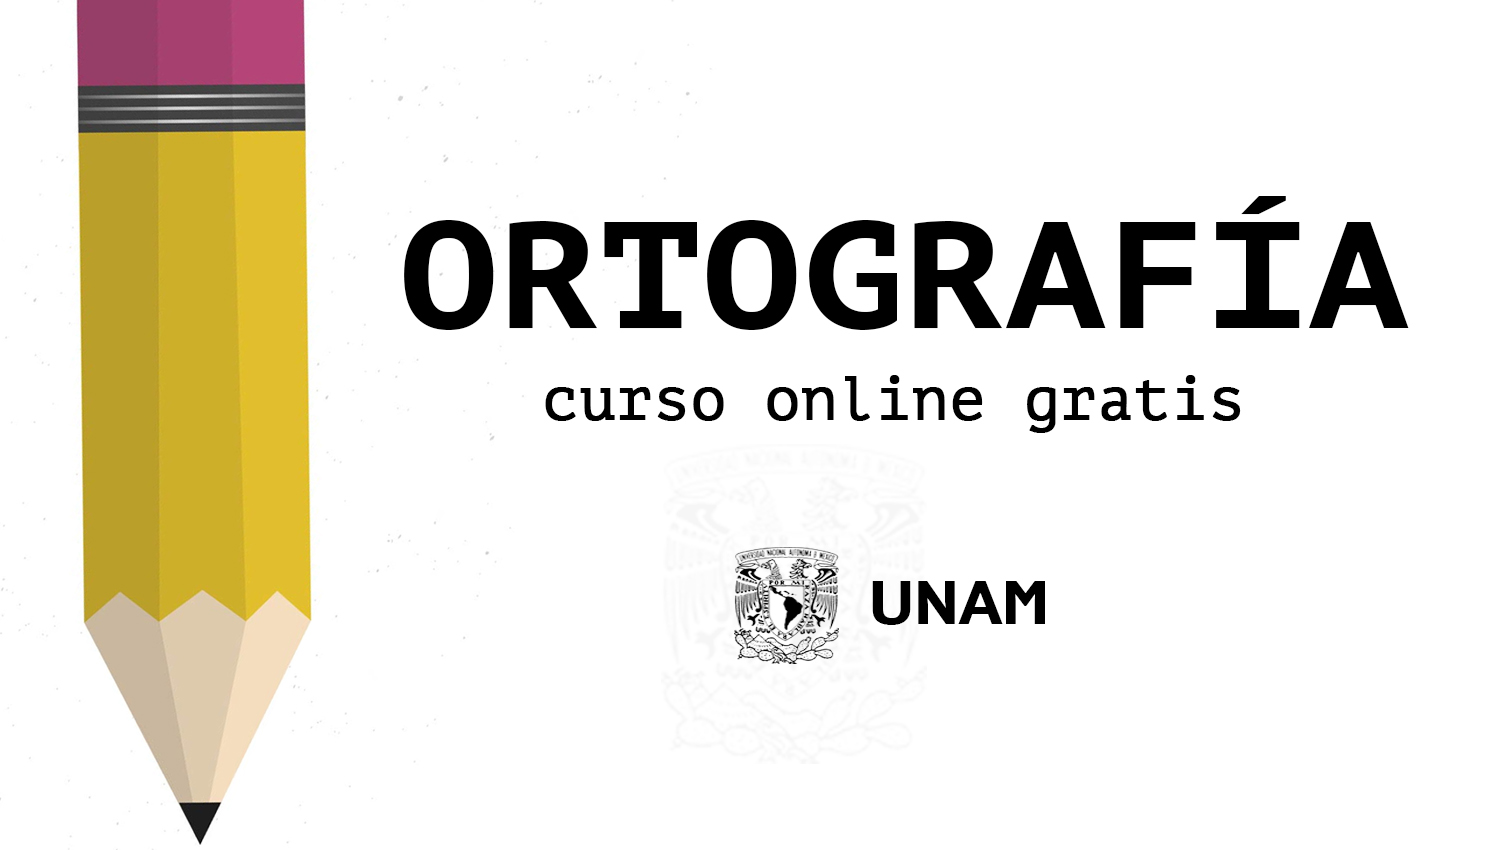 Distraer cansada debajo Curso online gratis de ortografía certificado por UNAM